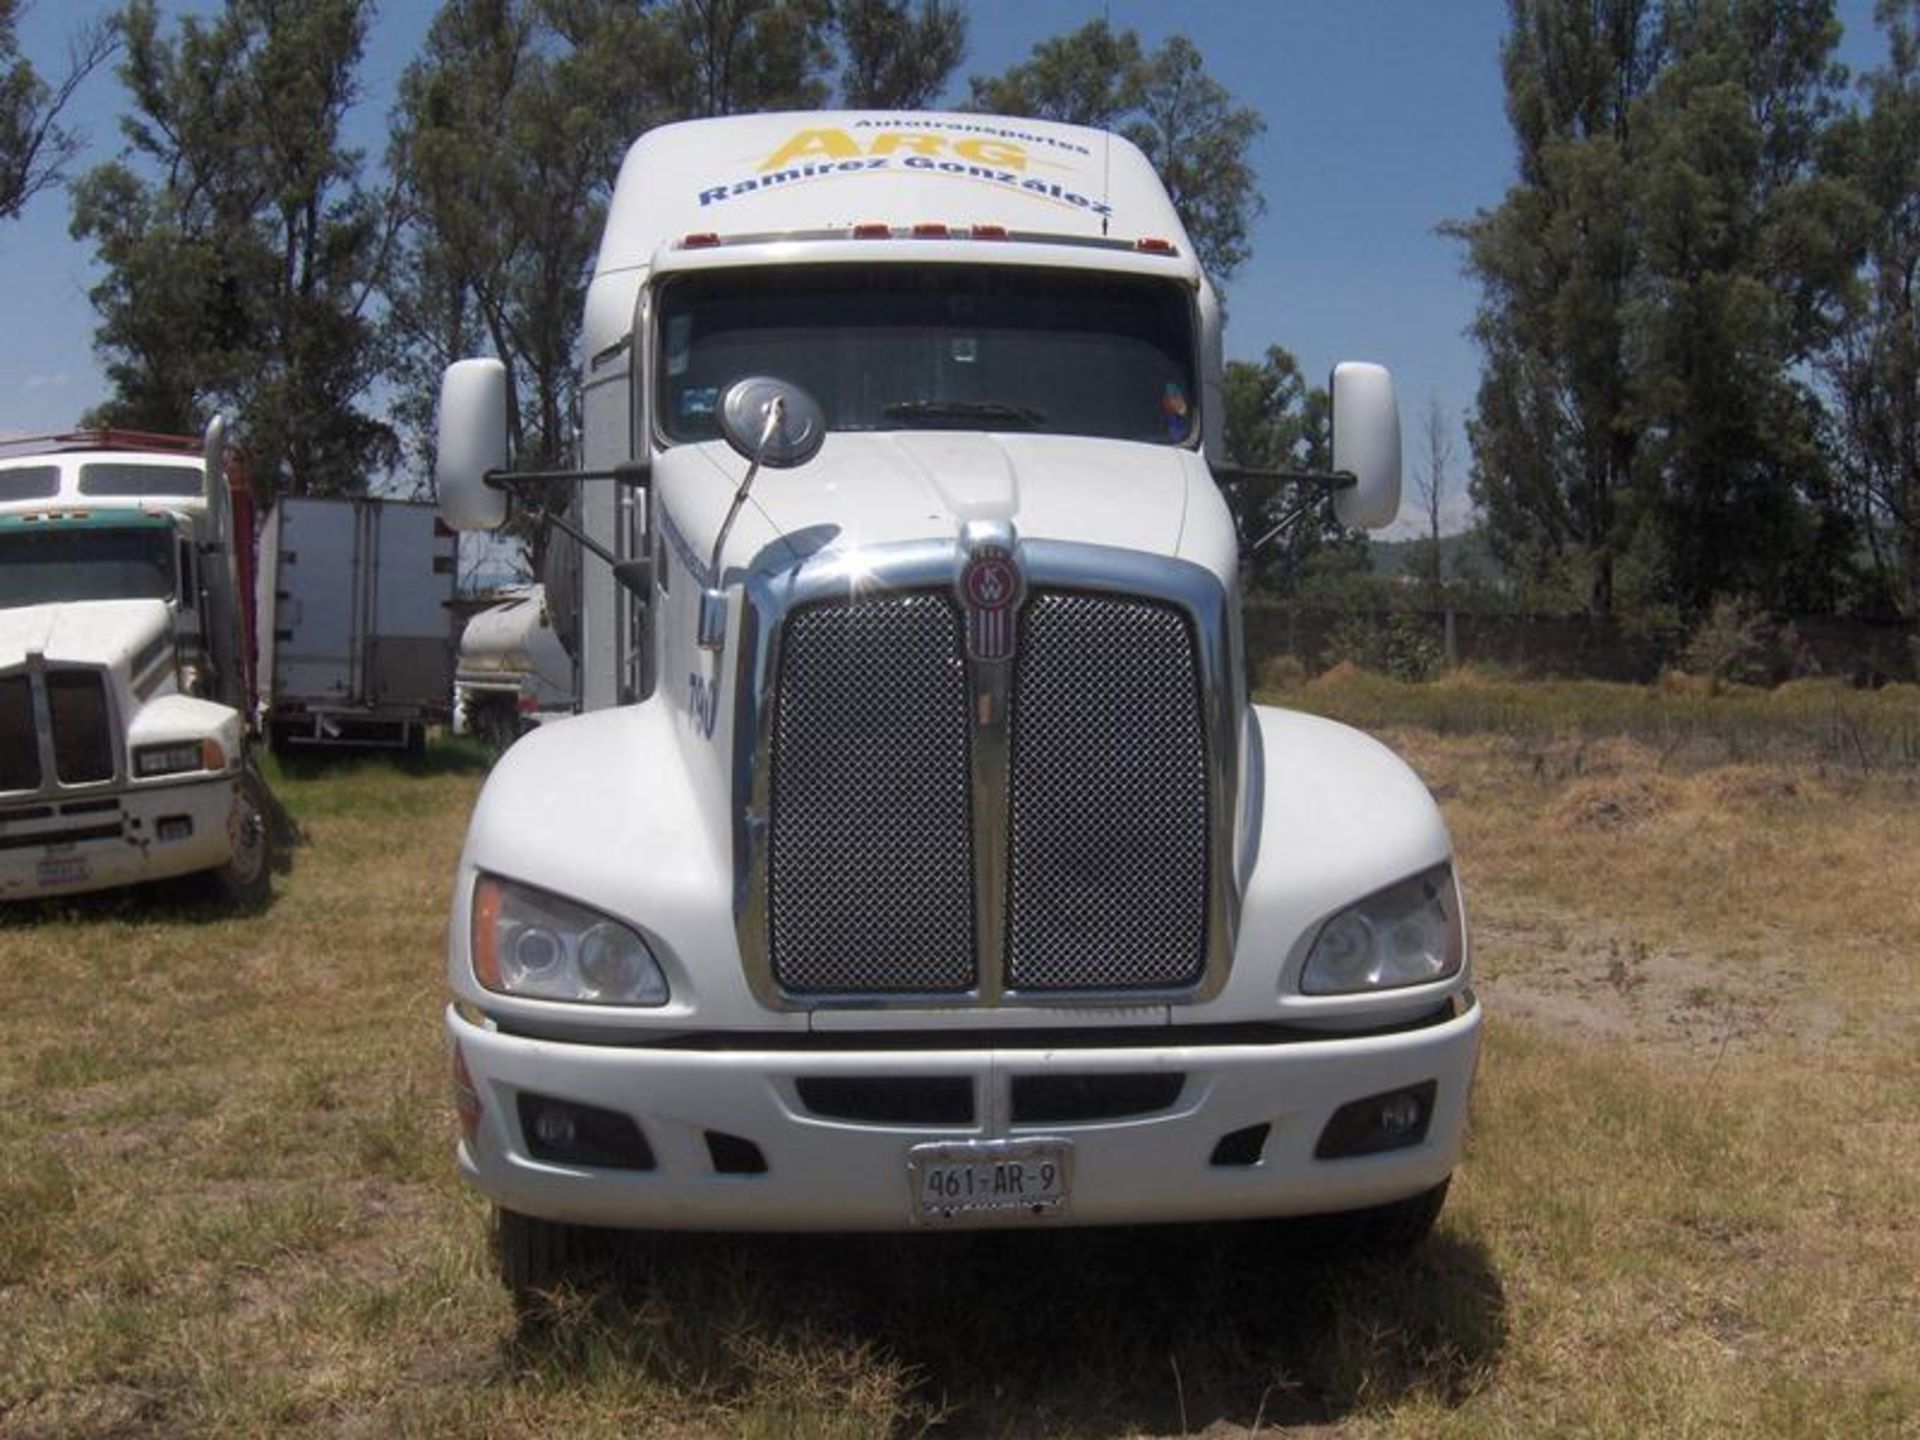 Vehículo Marca Kenworthtipo: Tracto Camion Modelo 2014 Numero Economico 790, Located In: Jalisco,